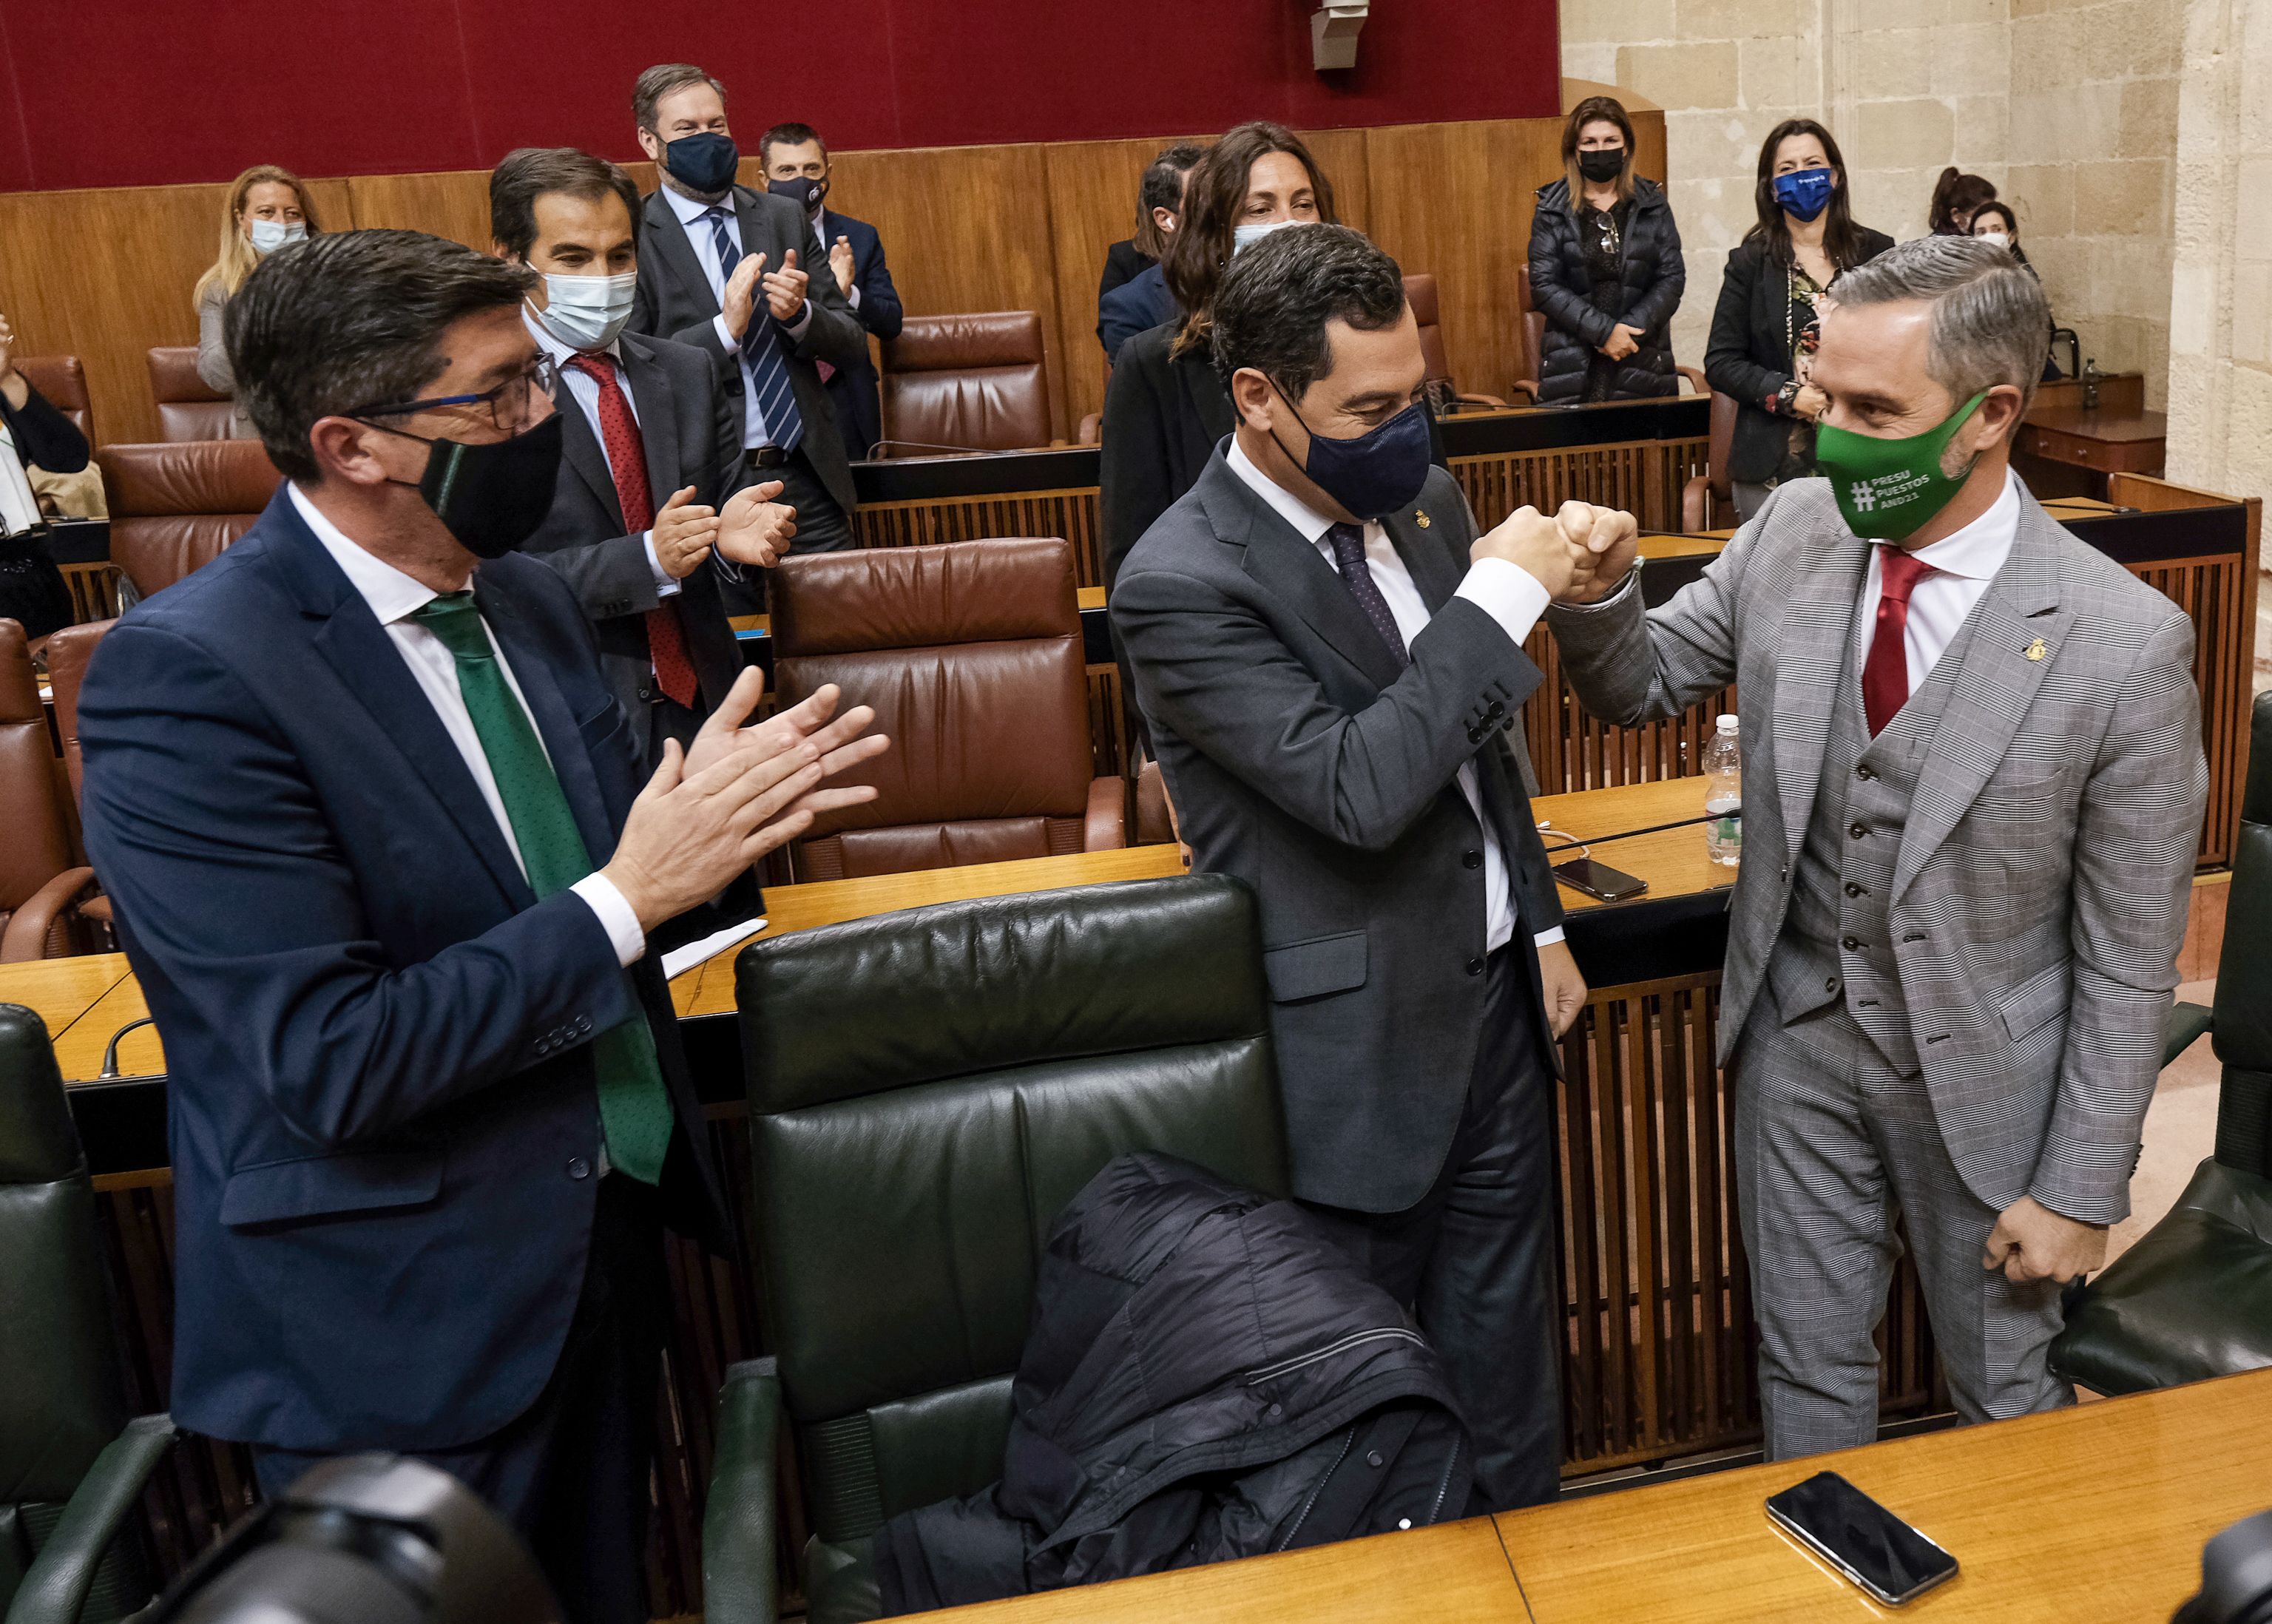 El presidente de la Junta de Andalucía, Juan Manuel Moreno, felicita al consejero de Hacienda, Juan Bravo, por la aprobación del Presupuesto, en presencia del vicepresidente, Juan Marín. Autor: Parlamento de Andalucía